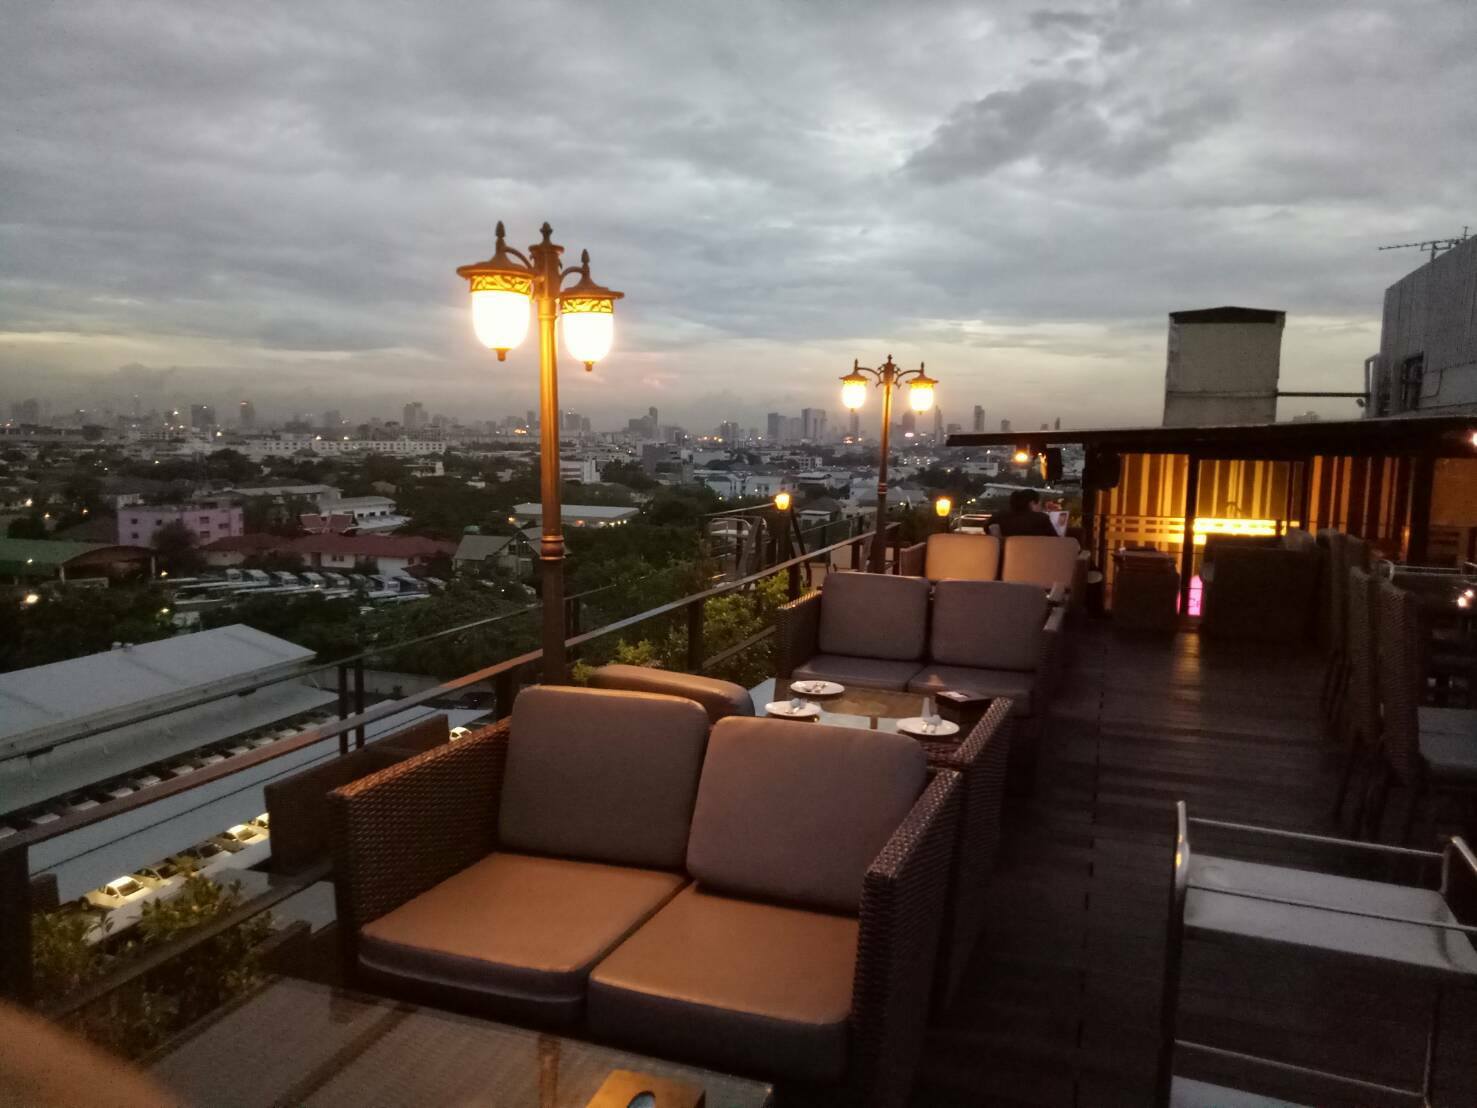 สกาย วิว (Sky View) : กรุงเทพมหานคร (Bangkok)